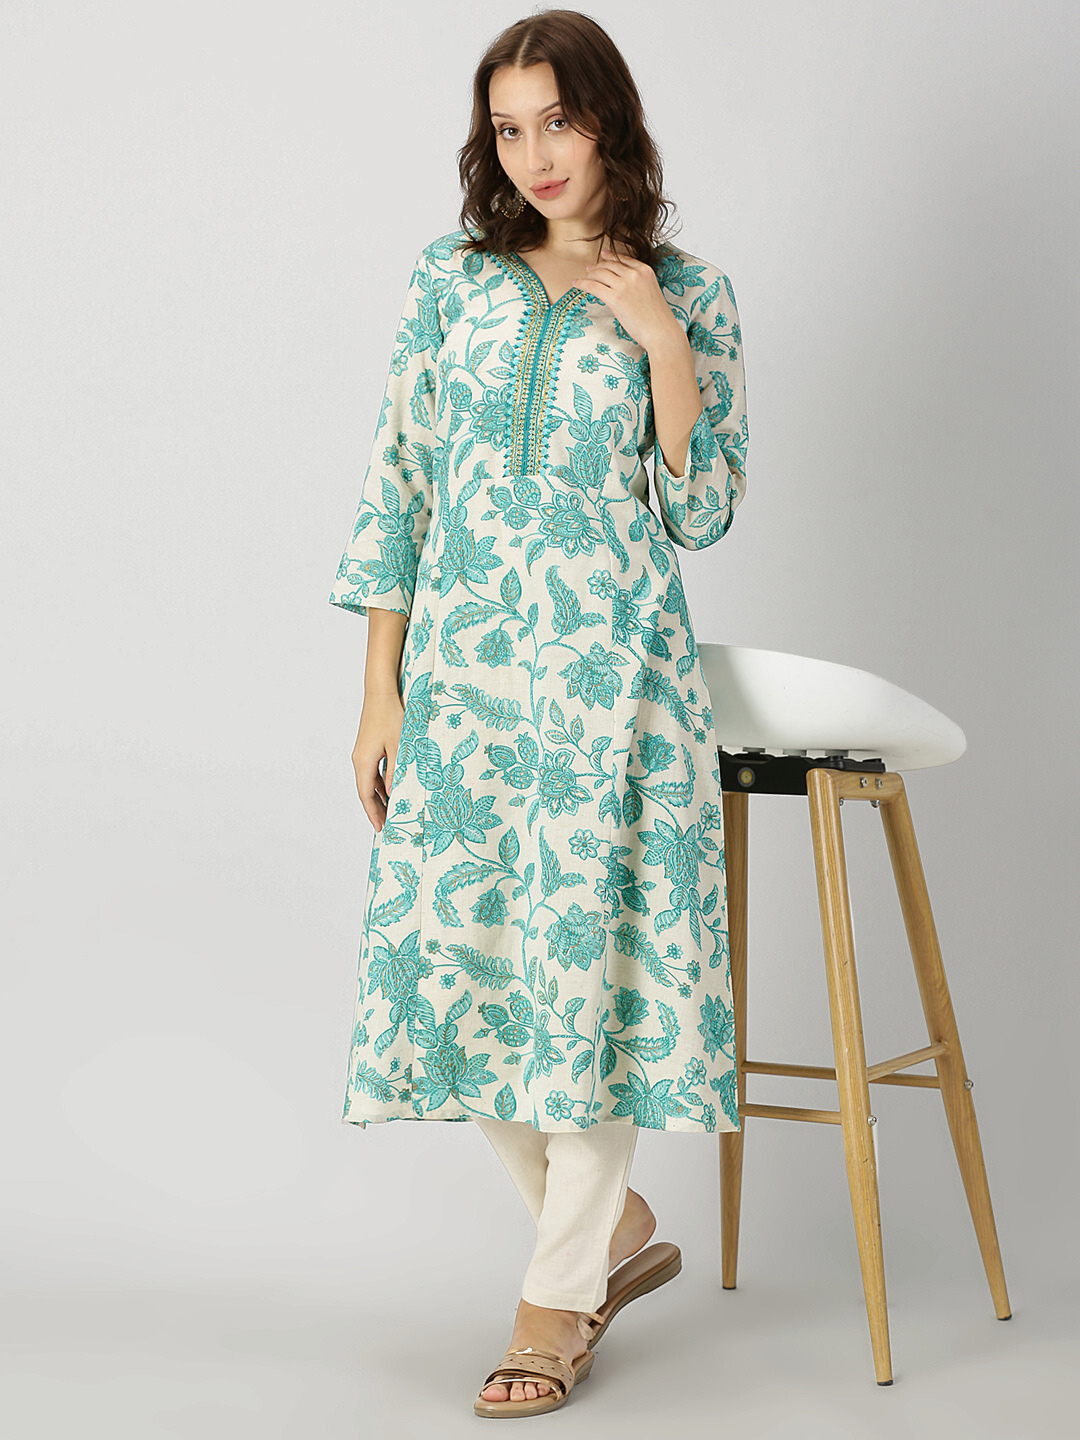 Cotton Printed Kurtis Dress Materials Leggings Jeggings at Rs 800